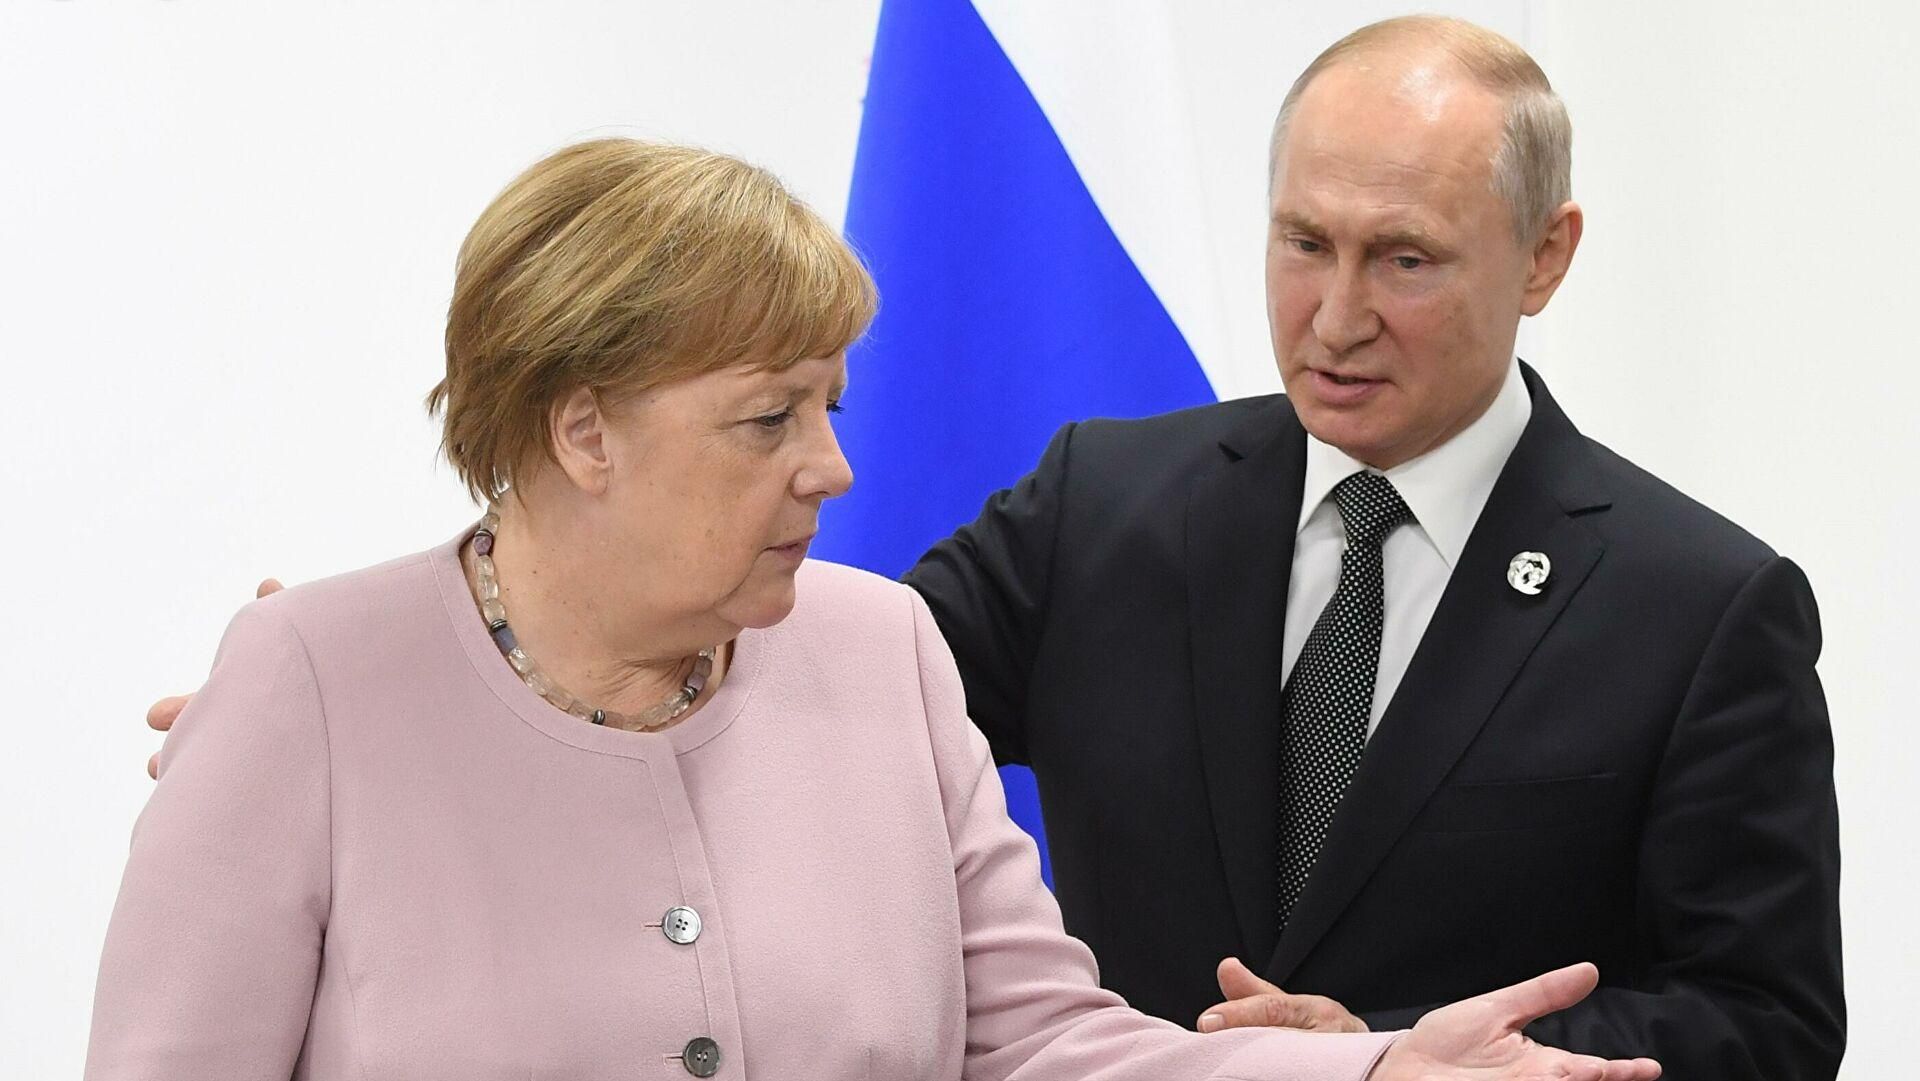 США и Германия определились с позицией, – исследователь о встрече Меркель с Путиным